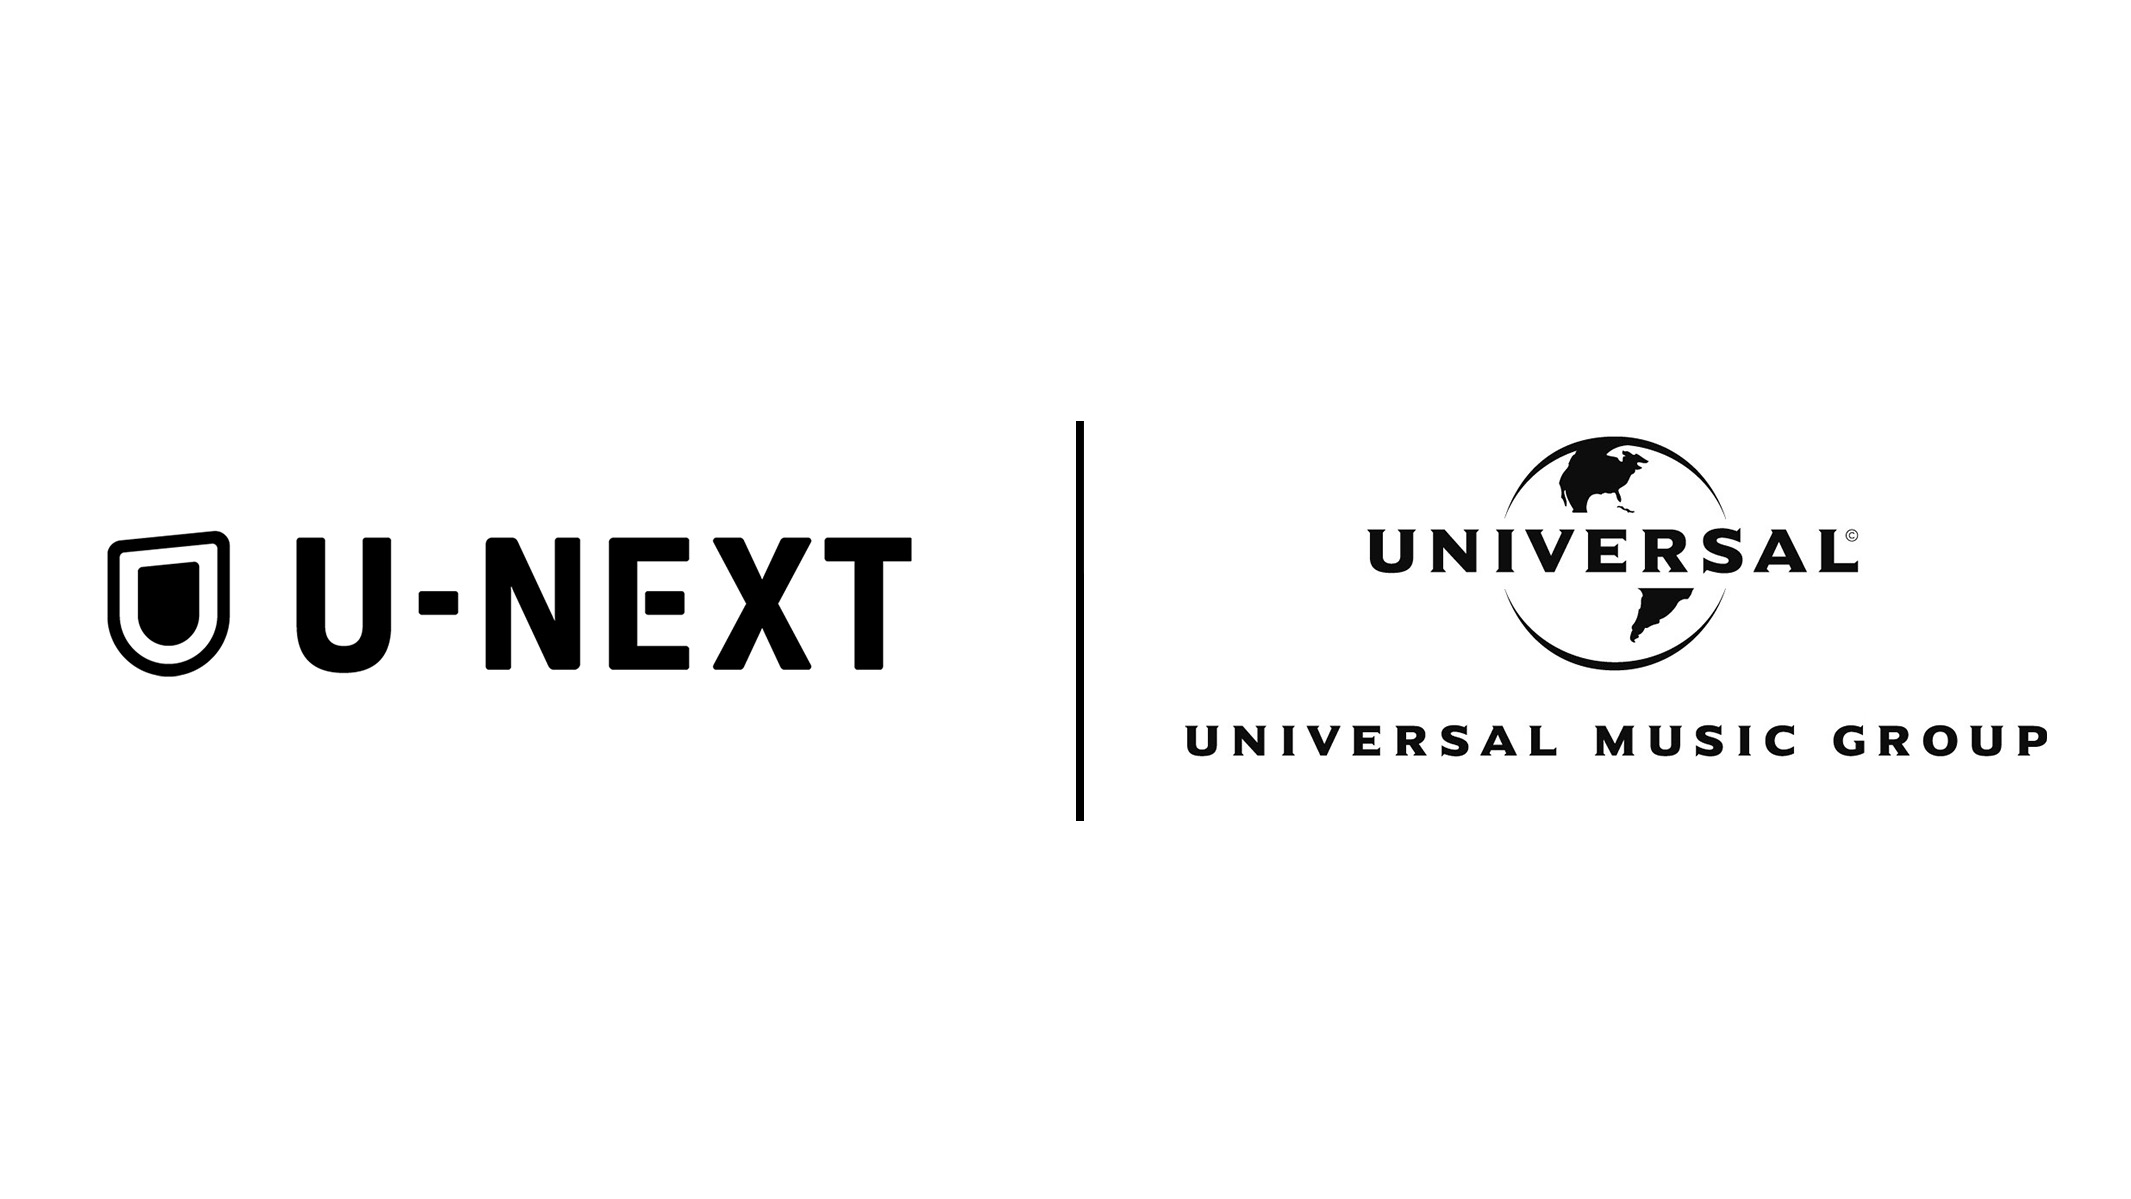 ユニバーサルミュージックジャパンがU-NEXTと包括的配信契約を行った時に使用された両者のロゴが入った画像